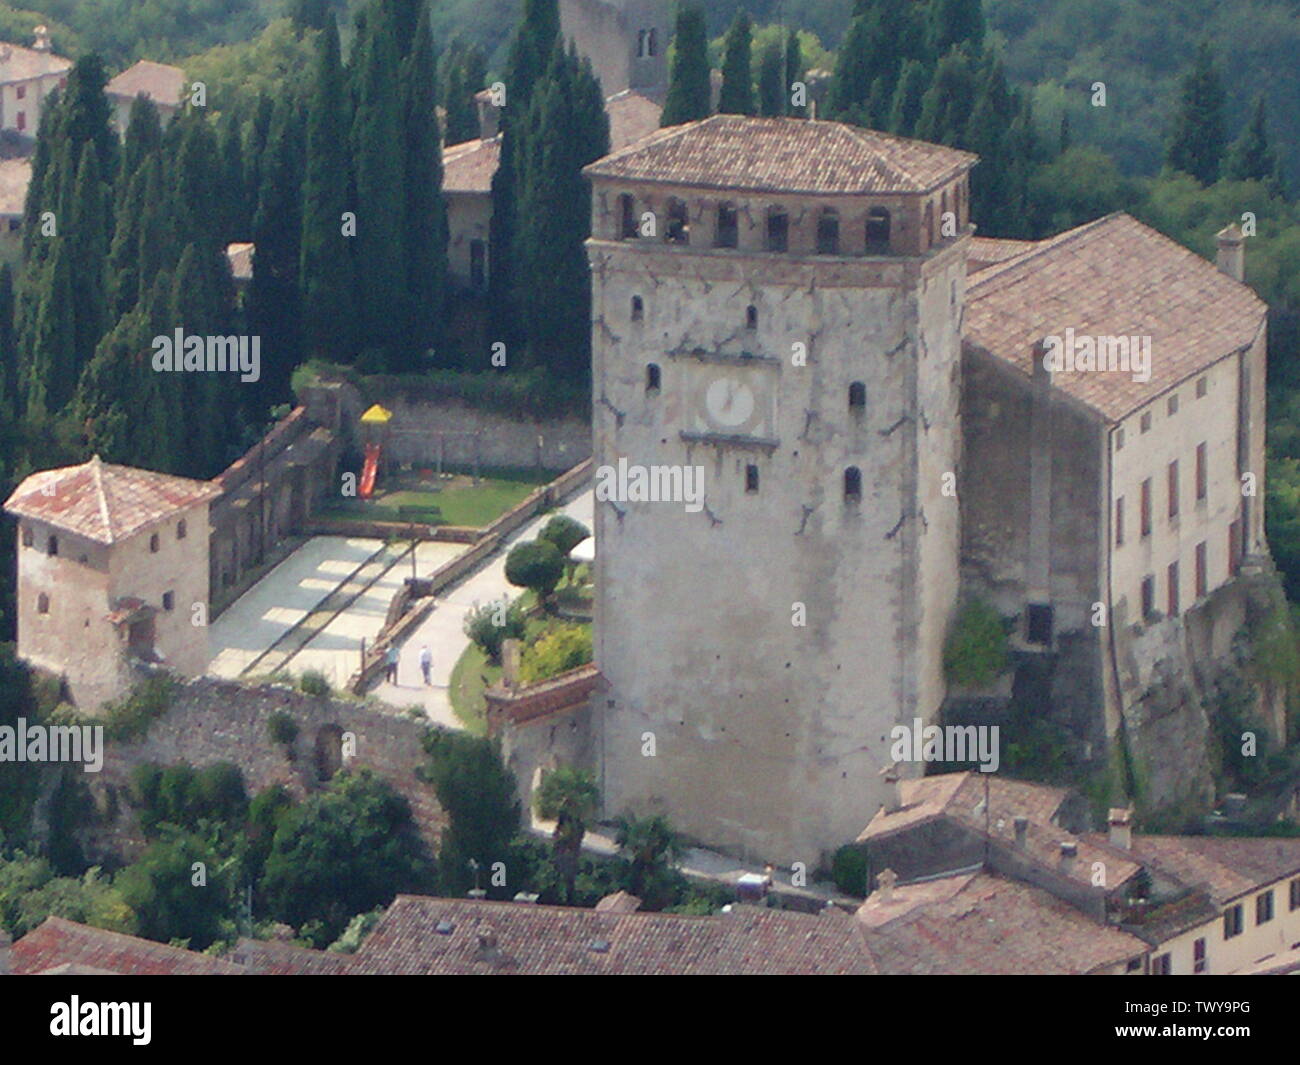 Veduta aerea del castello di Asolo; 17 de abril de 2007 (fecha de carga original); Transferido de it.pedia a Commons.; Simblek a Italian pedia; Foto de stock